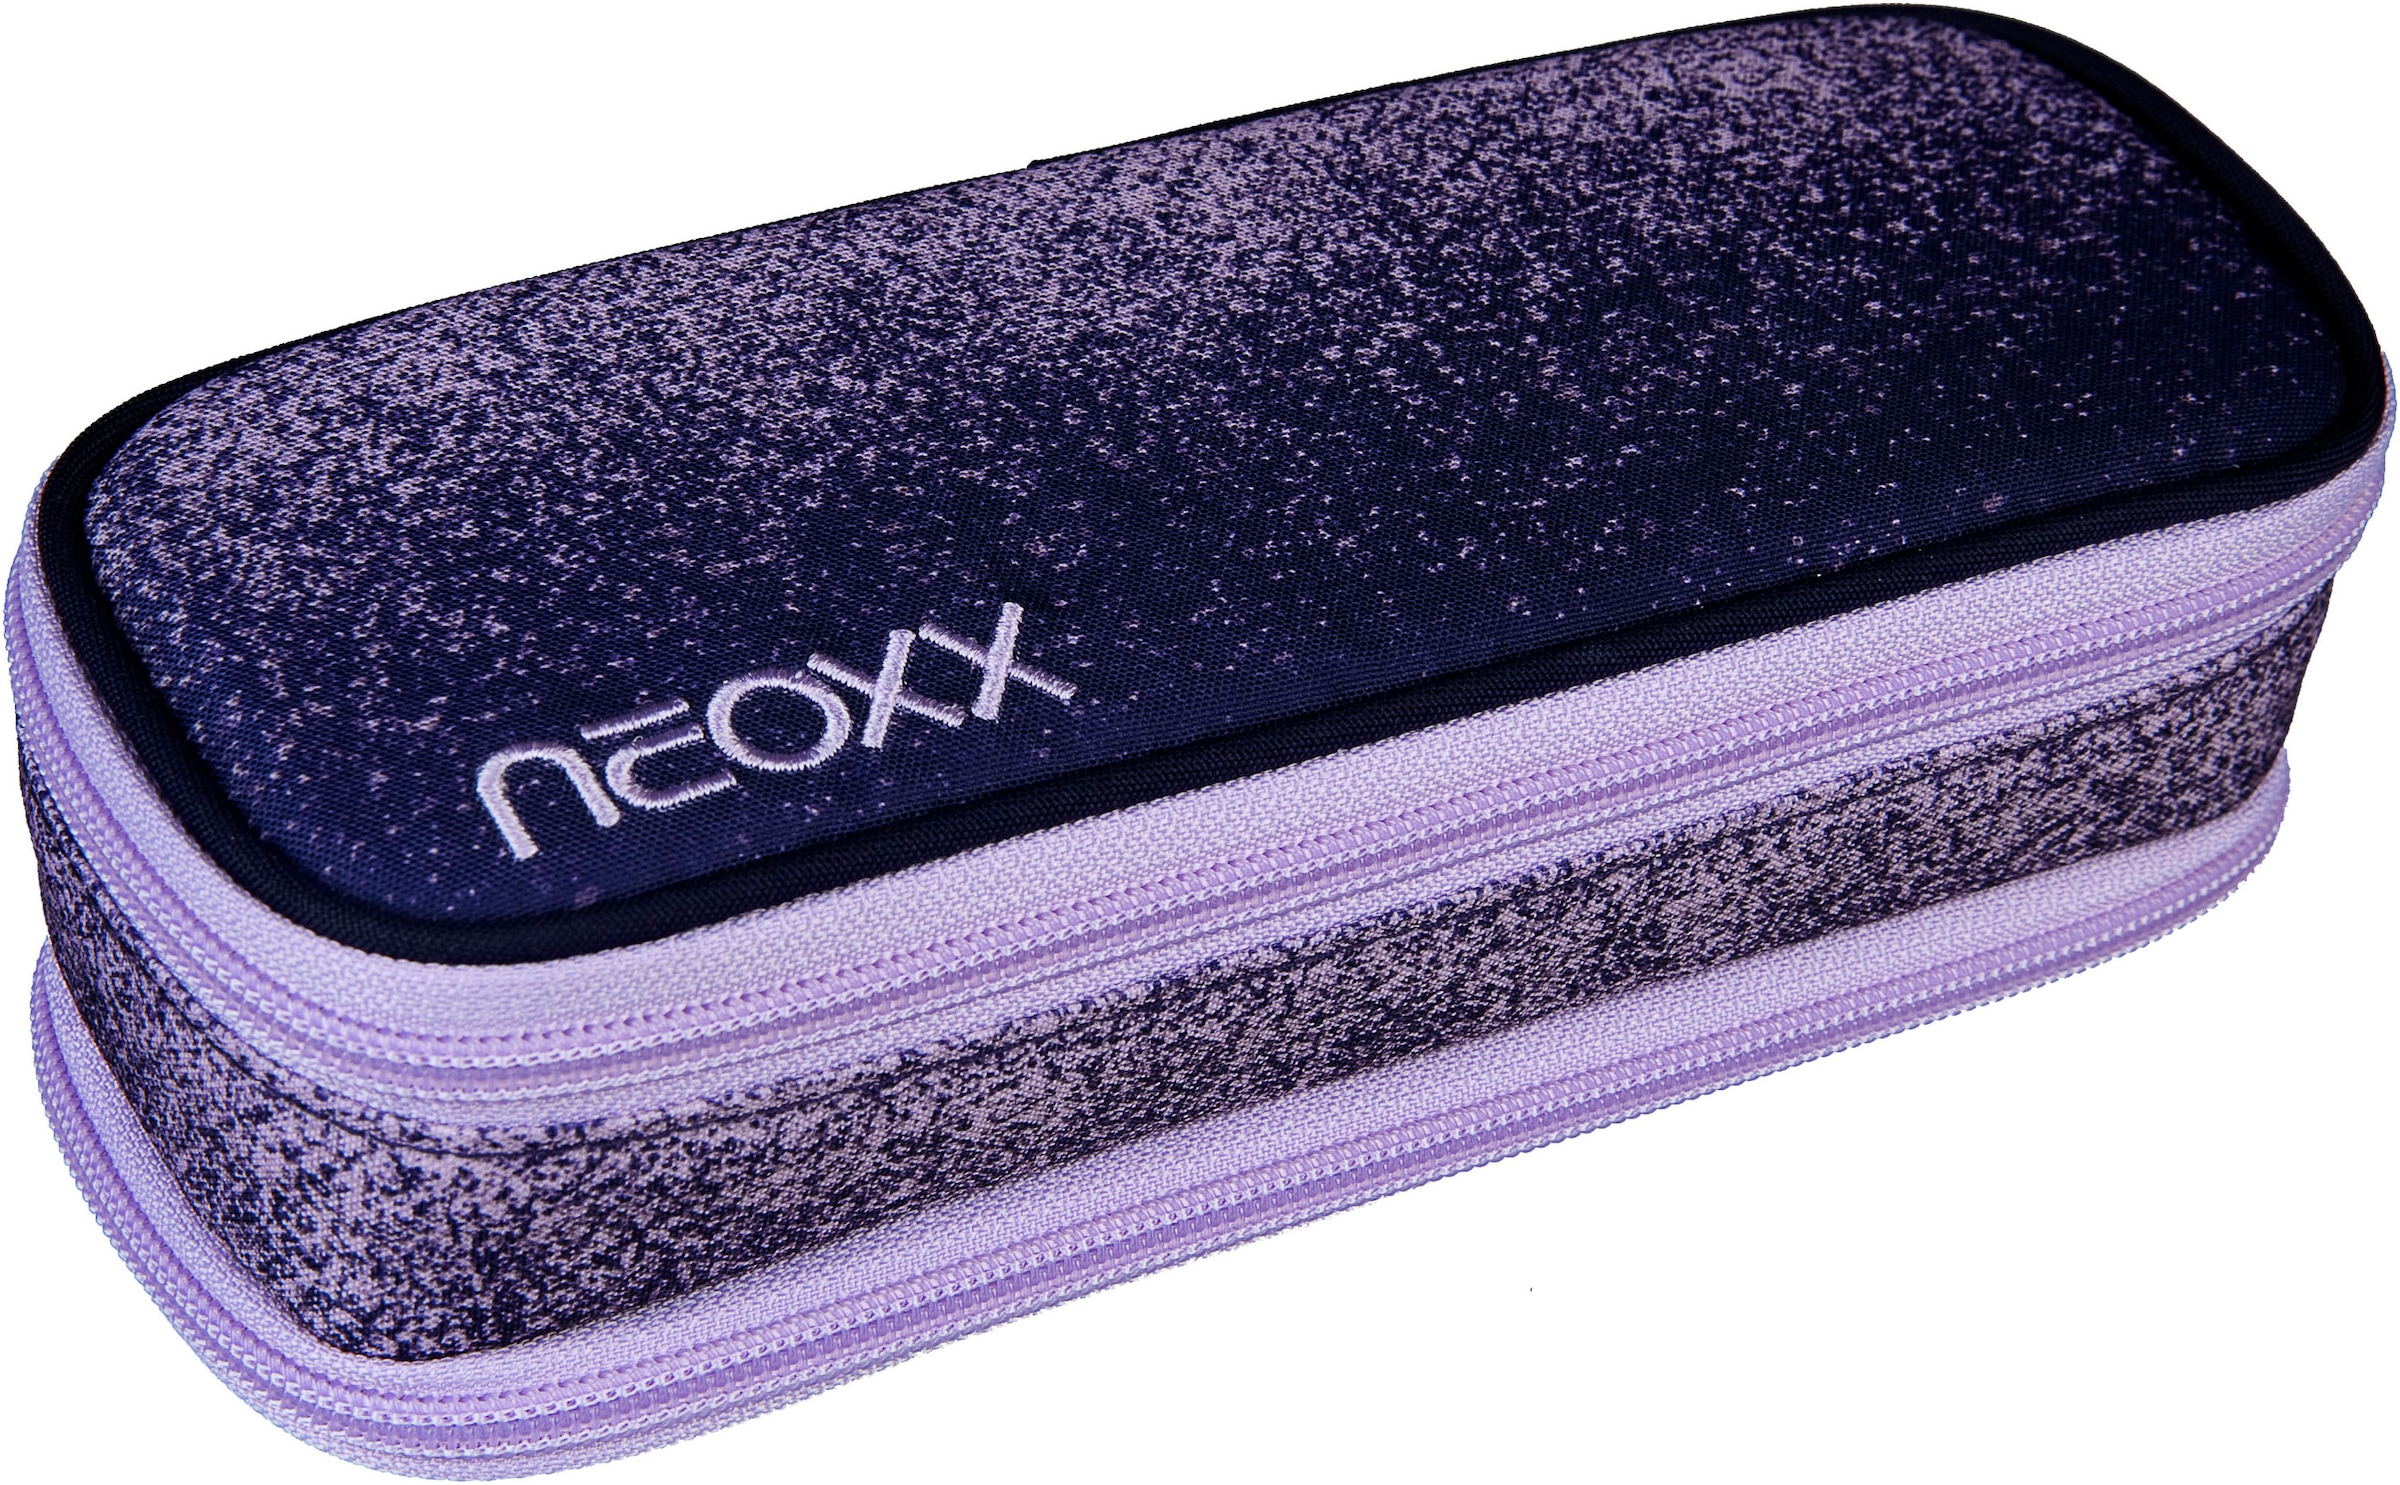 neoxx Schulrucksack »Fly Schulrucksack und Catch Schlamperbox, Glitterally perfect«, Reflektionsnaht, aus recycelten PET-Flaschen